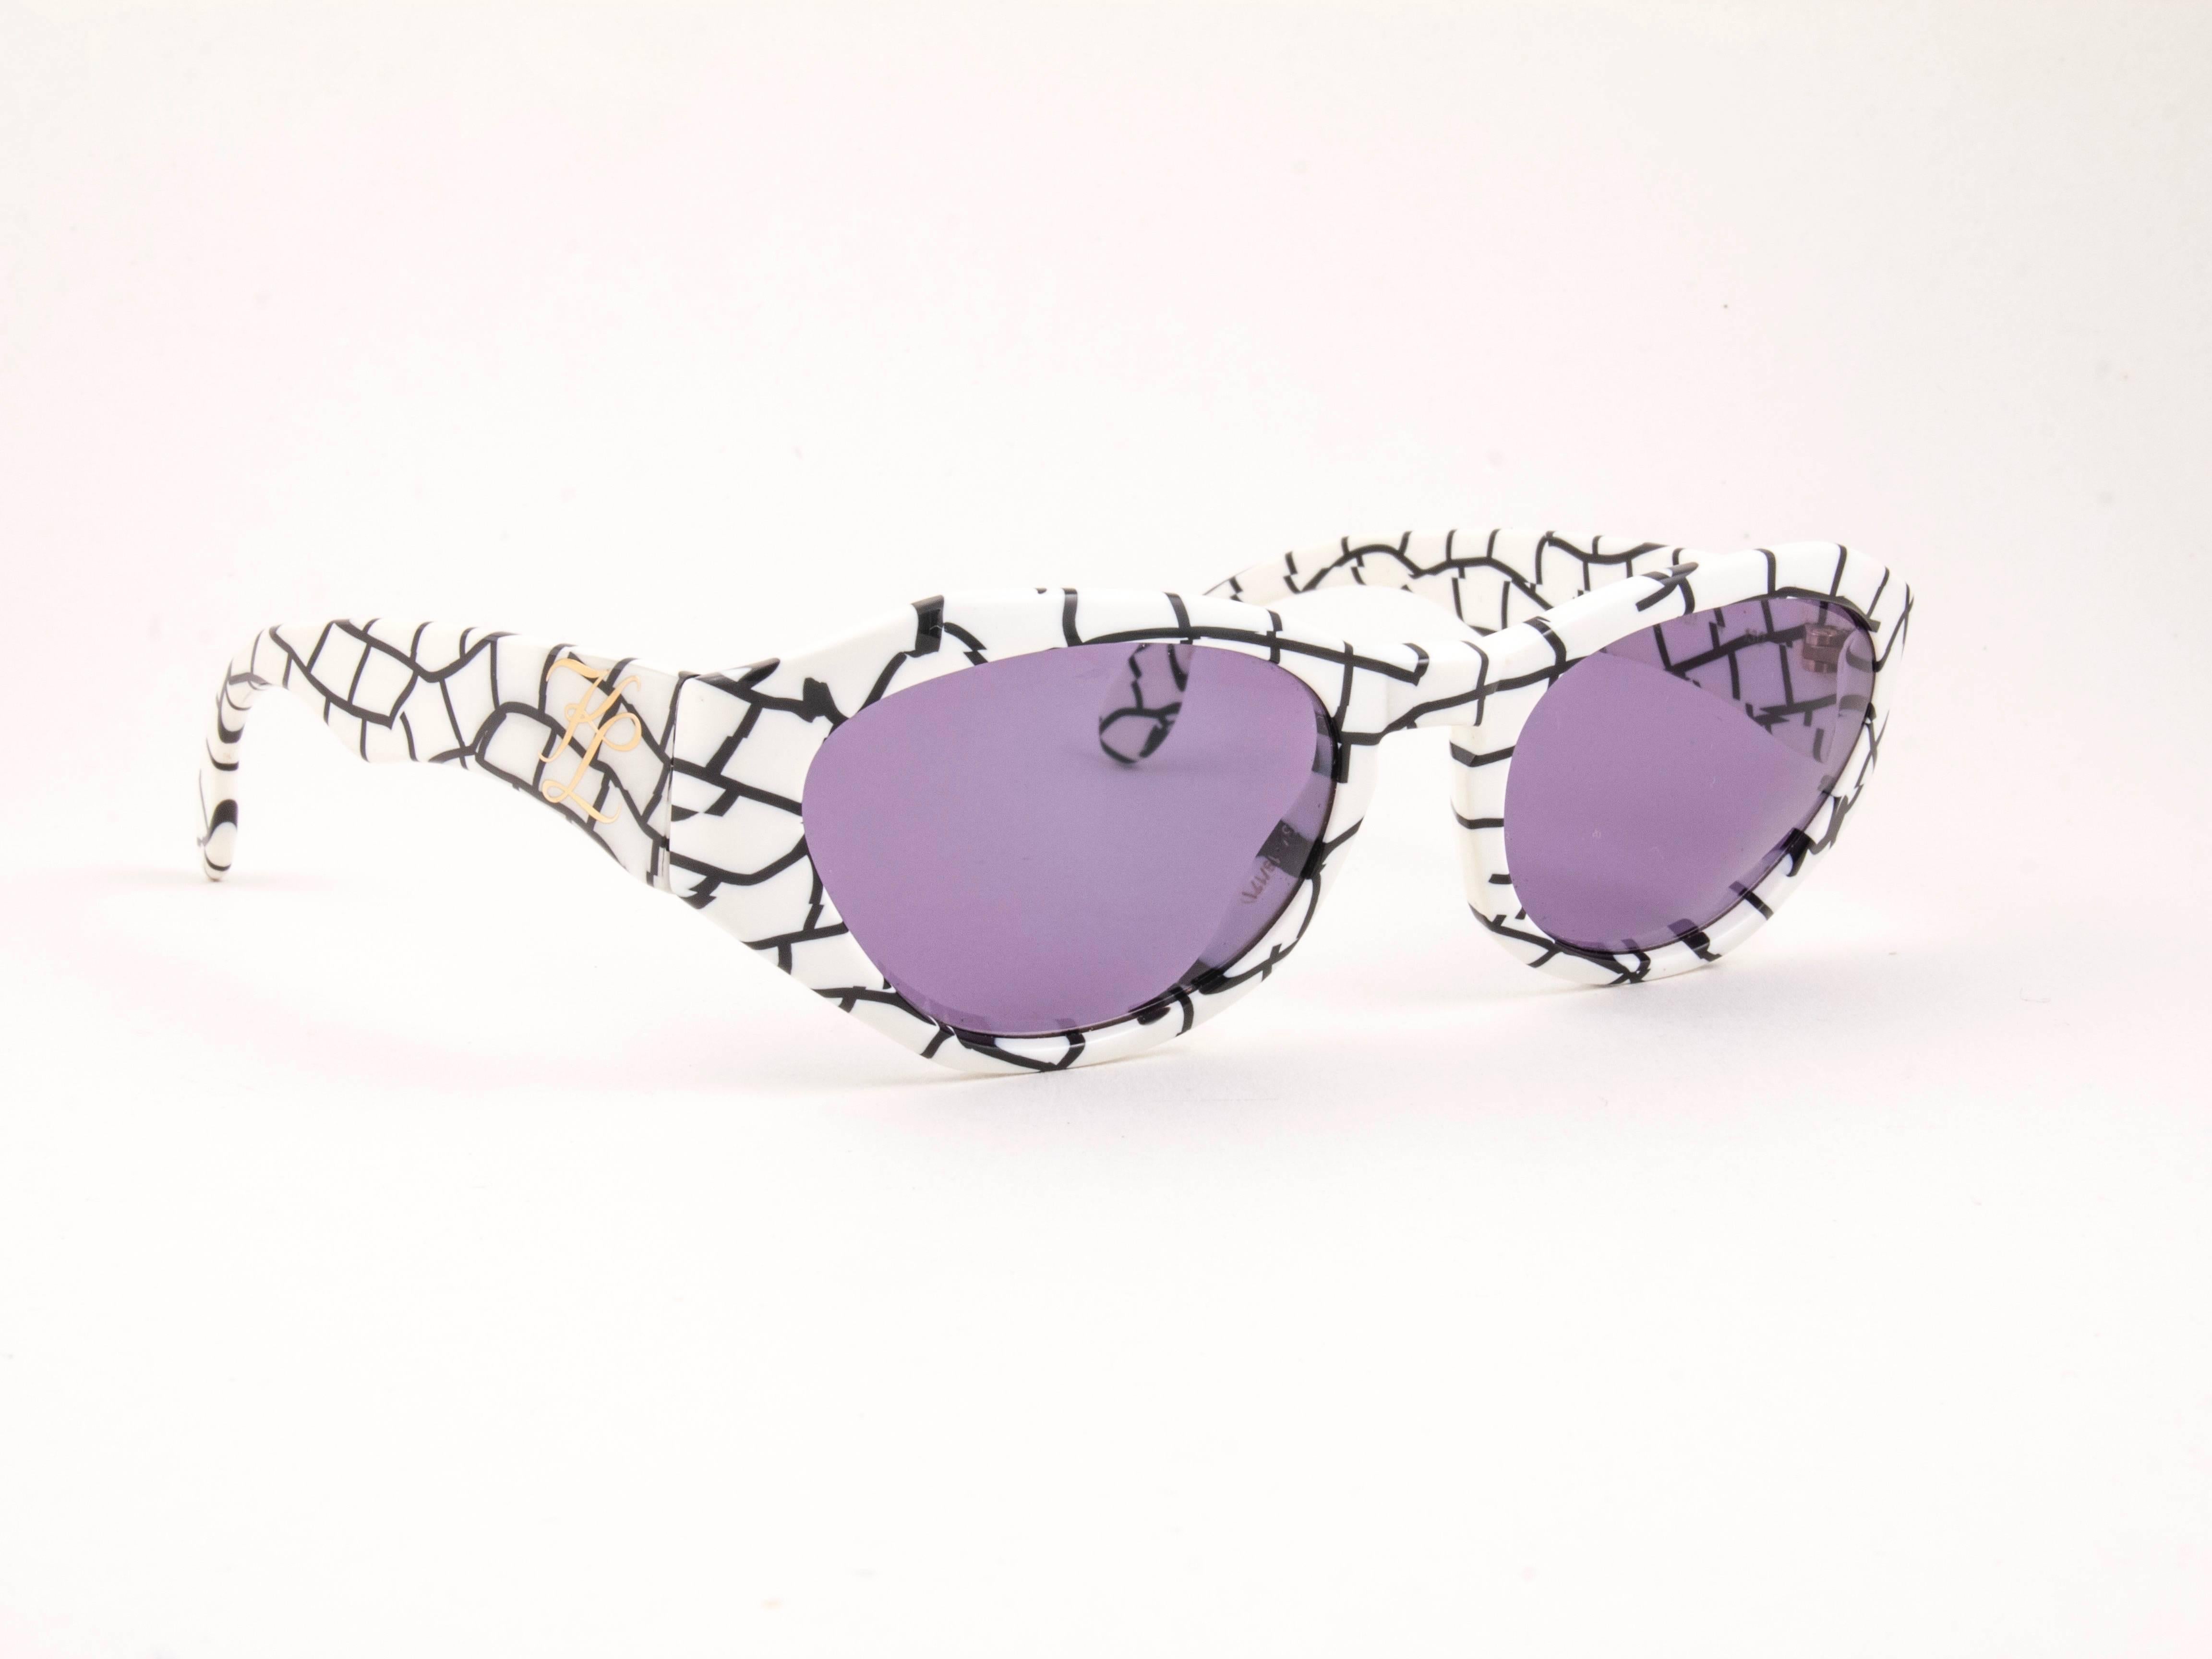 Neue Karl Lagerfeld-Sonnenbrille aus den 1990er Jahren. Weißer und schwarzer Rahmen mit einem makellosen Paar rauchgrauer Gläser.
 
Neu, nie getragen oder ausgestellt. 
Entworfen und hergestellt in Frankreich.
